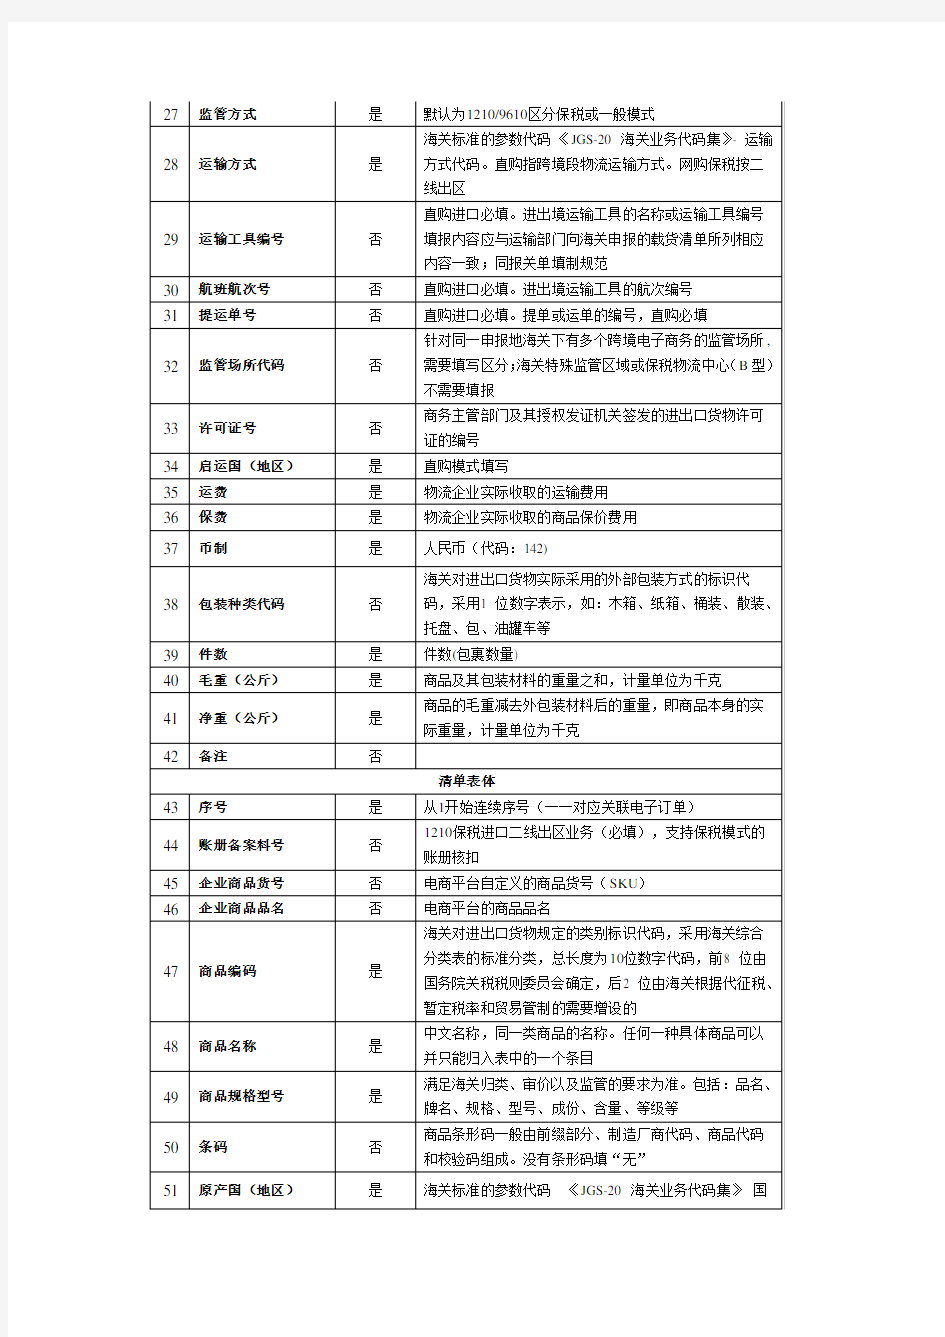 中华人民共和国跨境电子商务零售进口商品申报清单数据